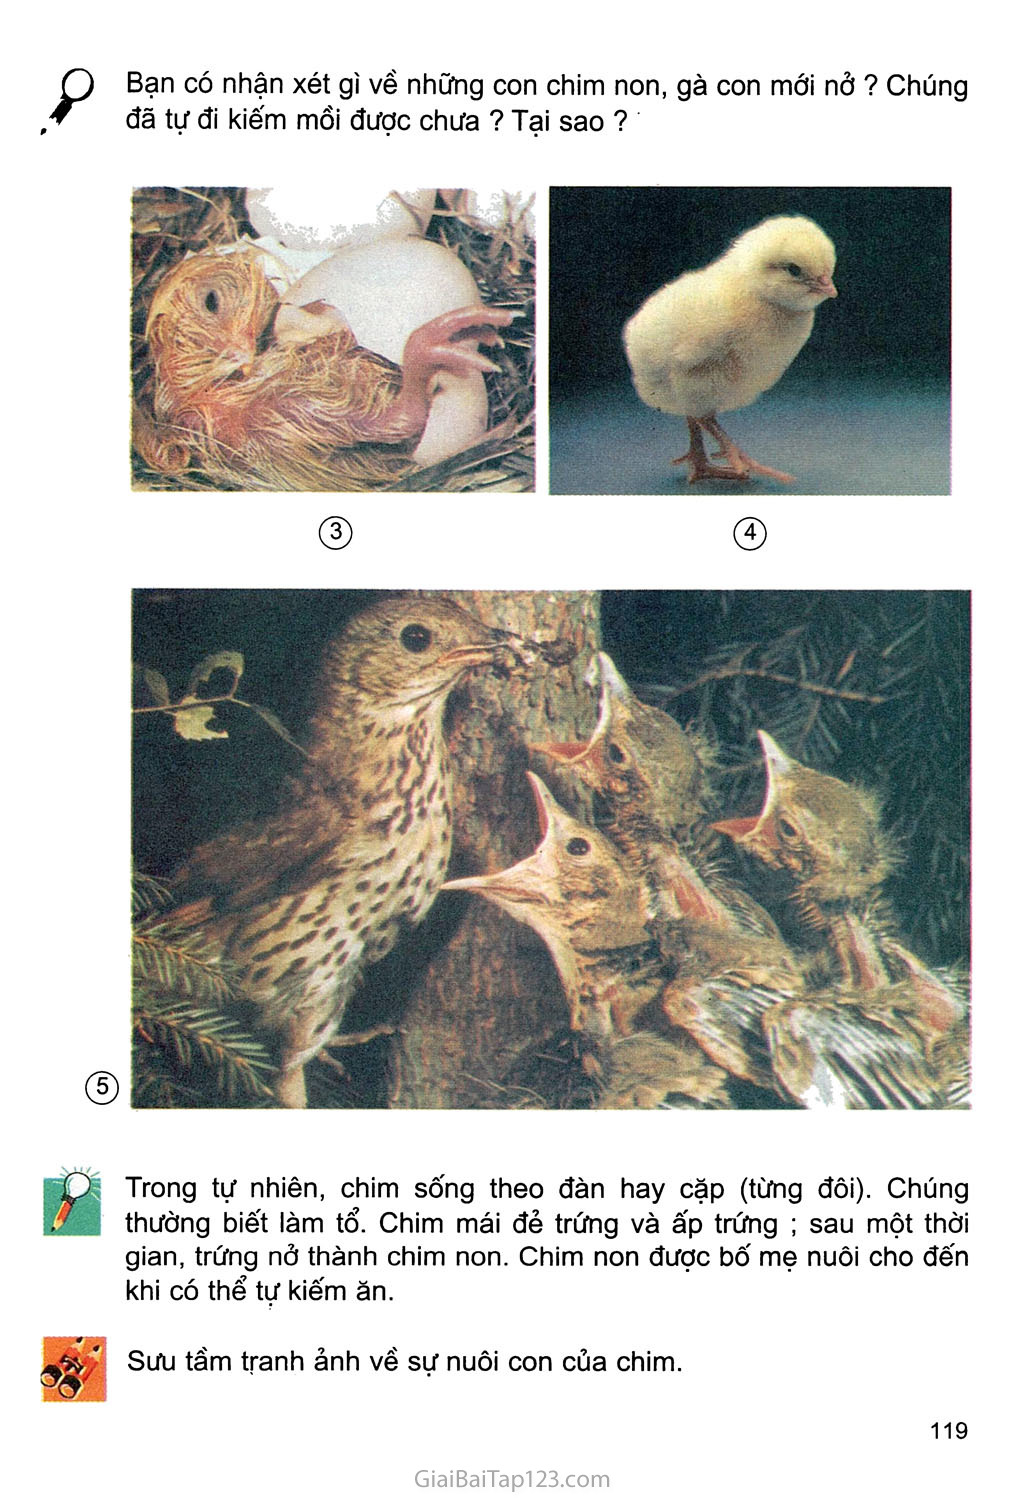 Chim sẻ ký sinh nhờ trong tổ bắt chước con non để lừa bố mẹ cho ăn